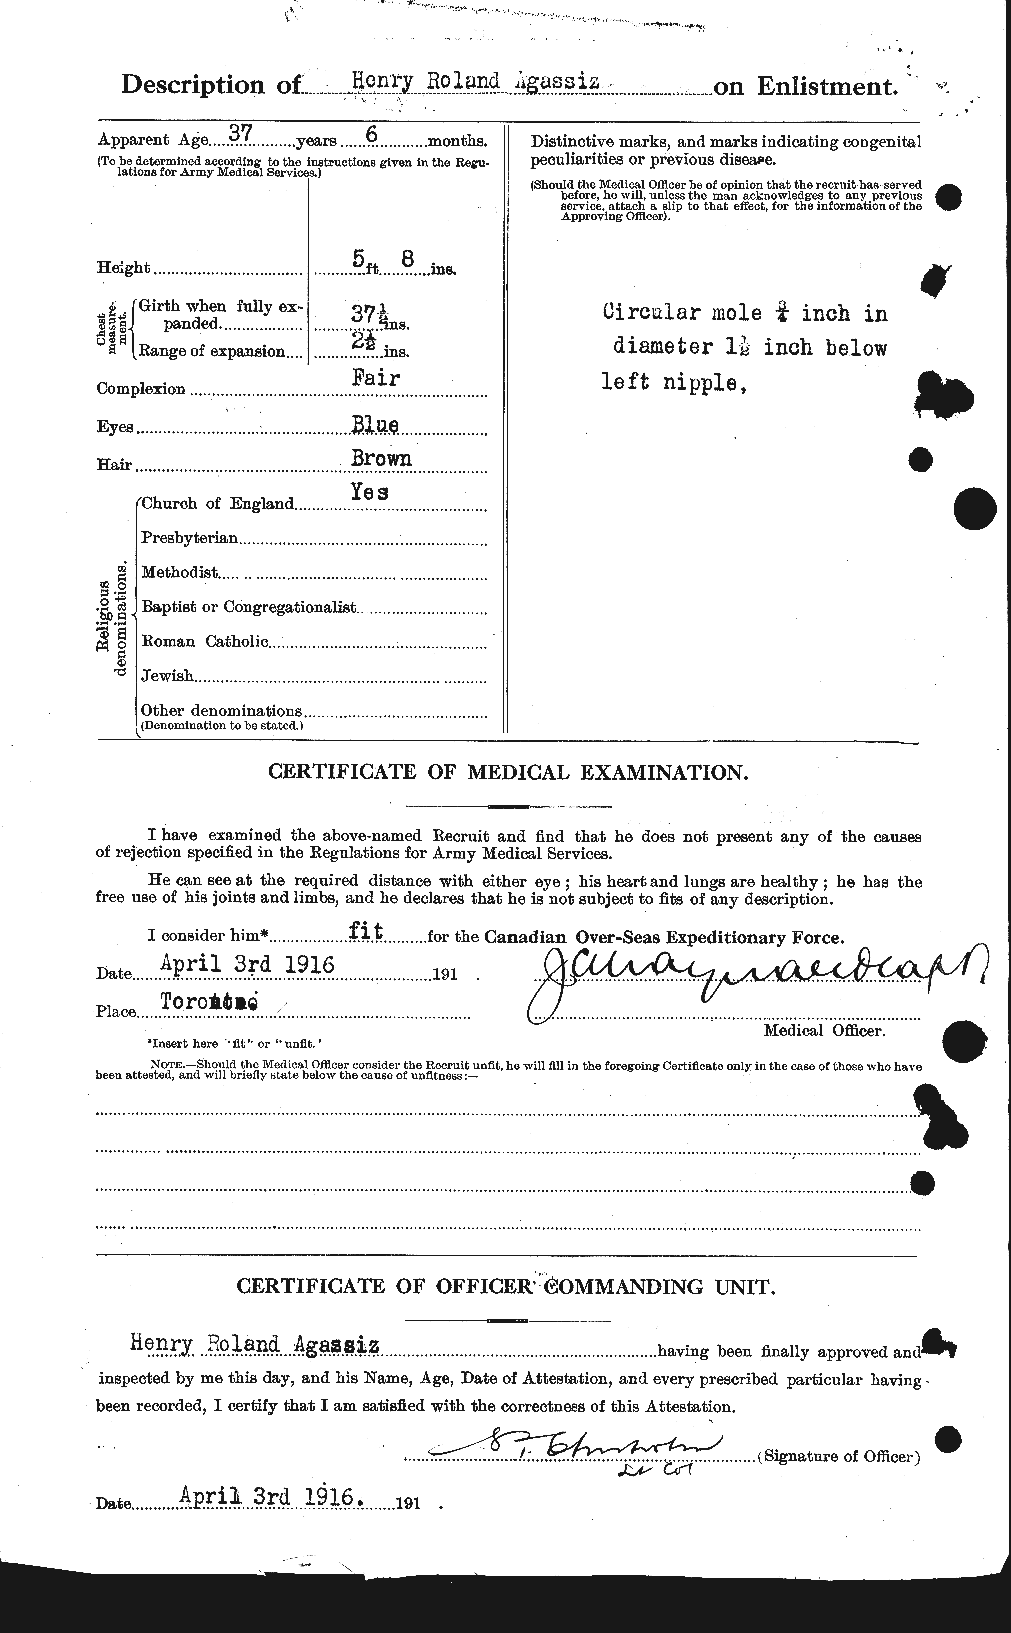 Dossiers du Personnel de la Première Guerre mondiale - CEC 203698b